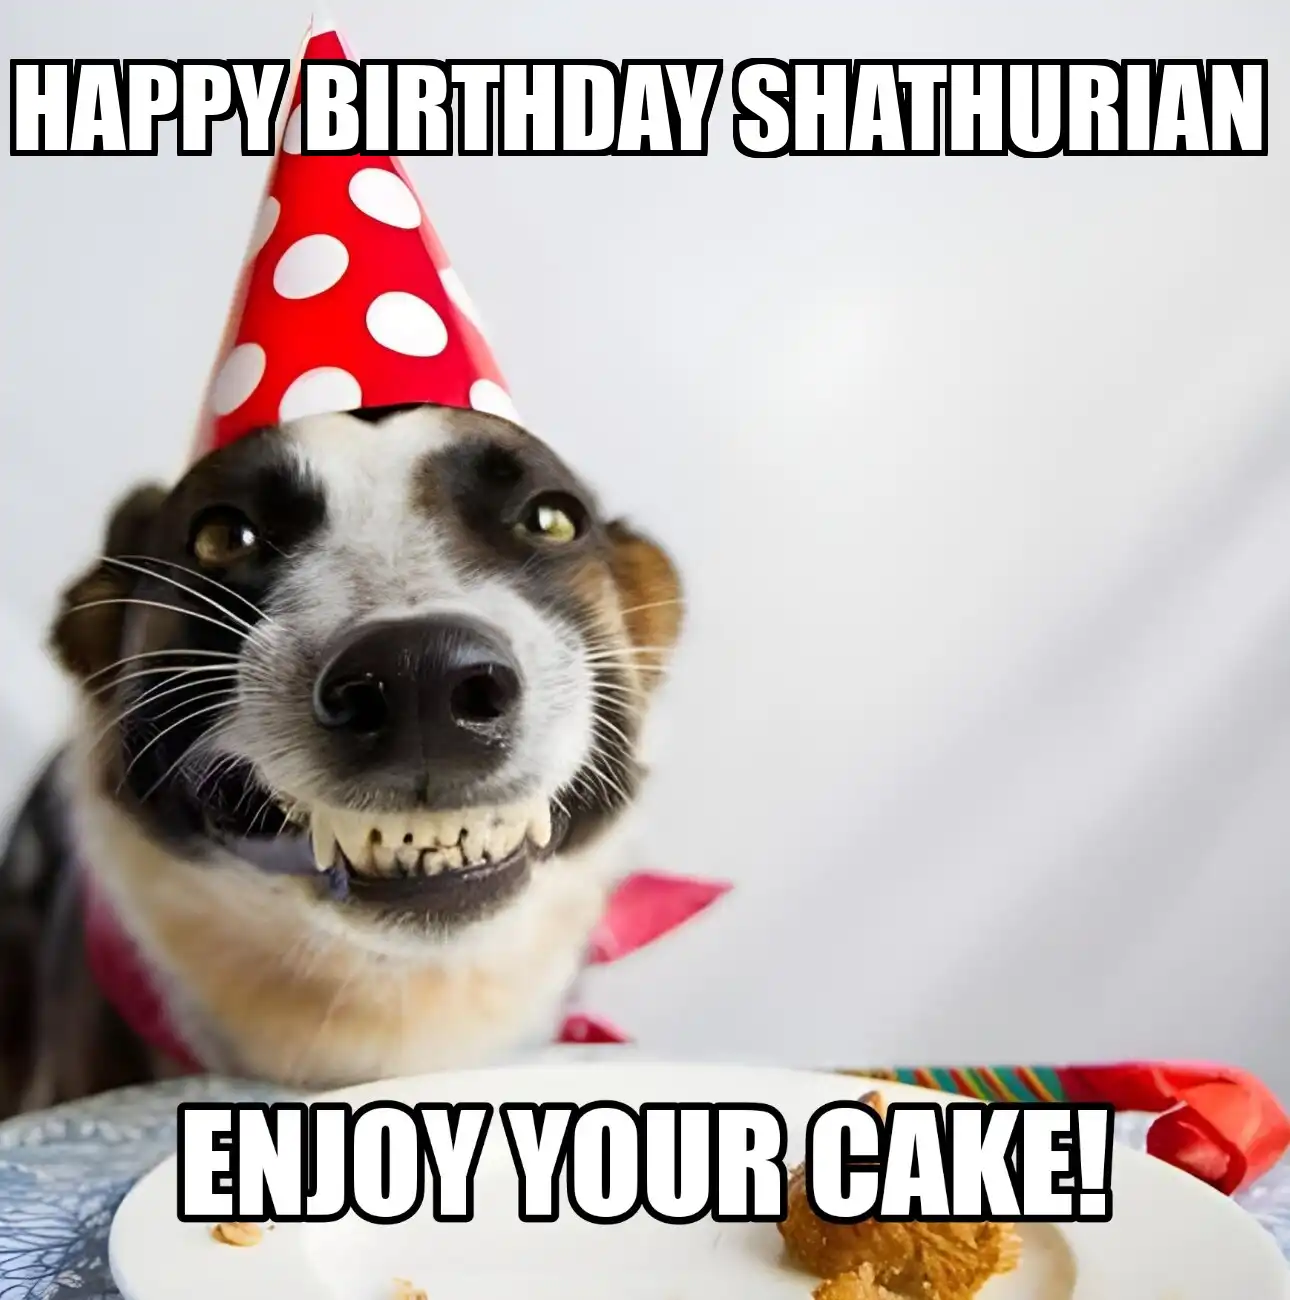 Happy Birthday Shathurian Enjoy Your Cake Dog Meme